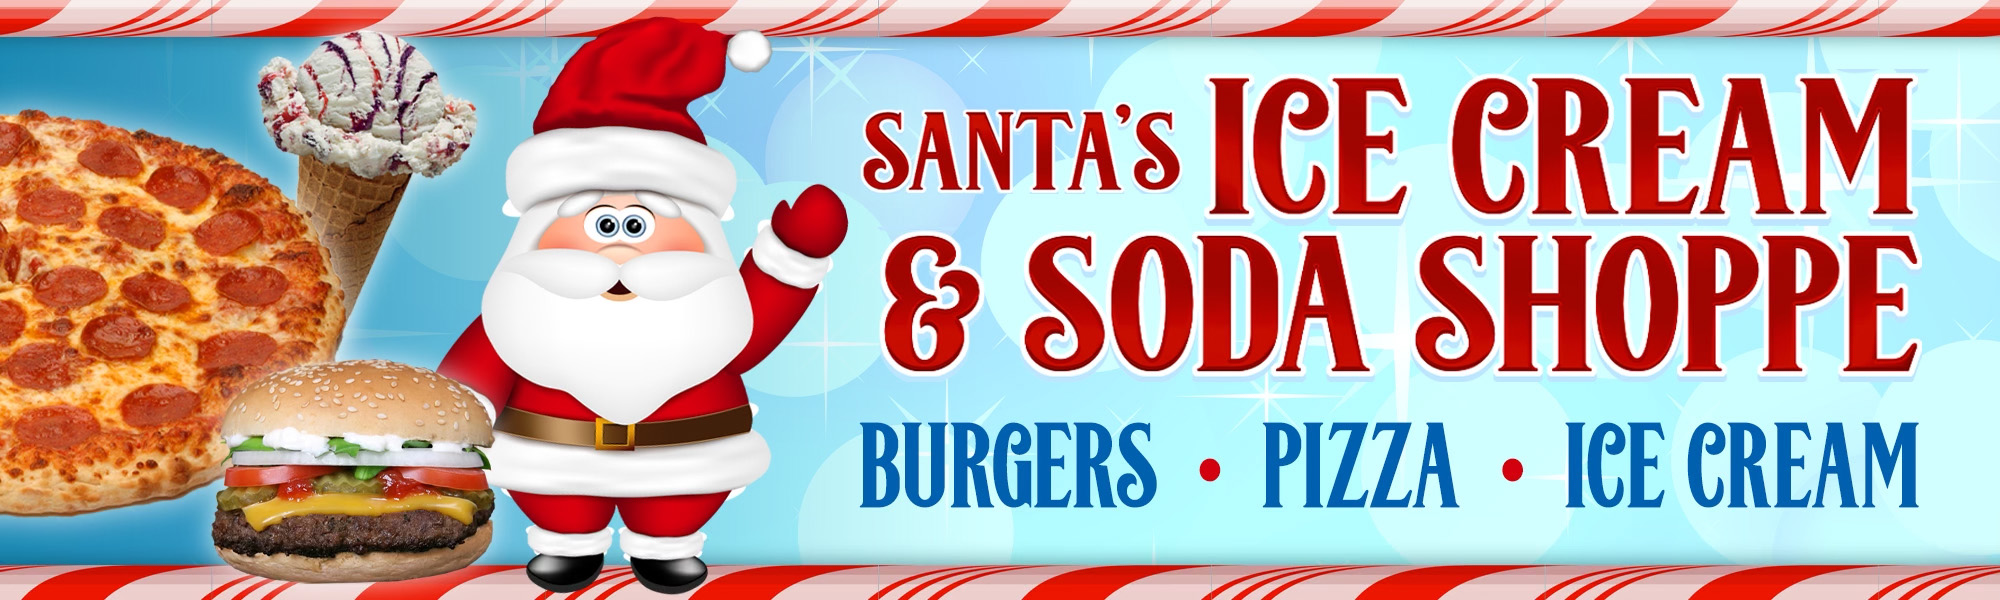 Santa's Ice Cream & Soda Header